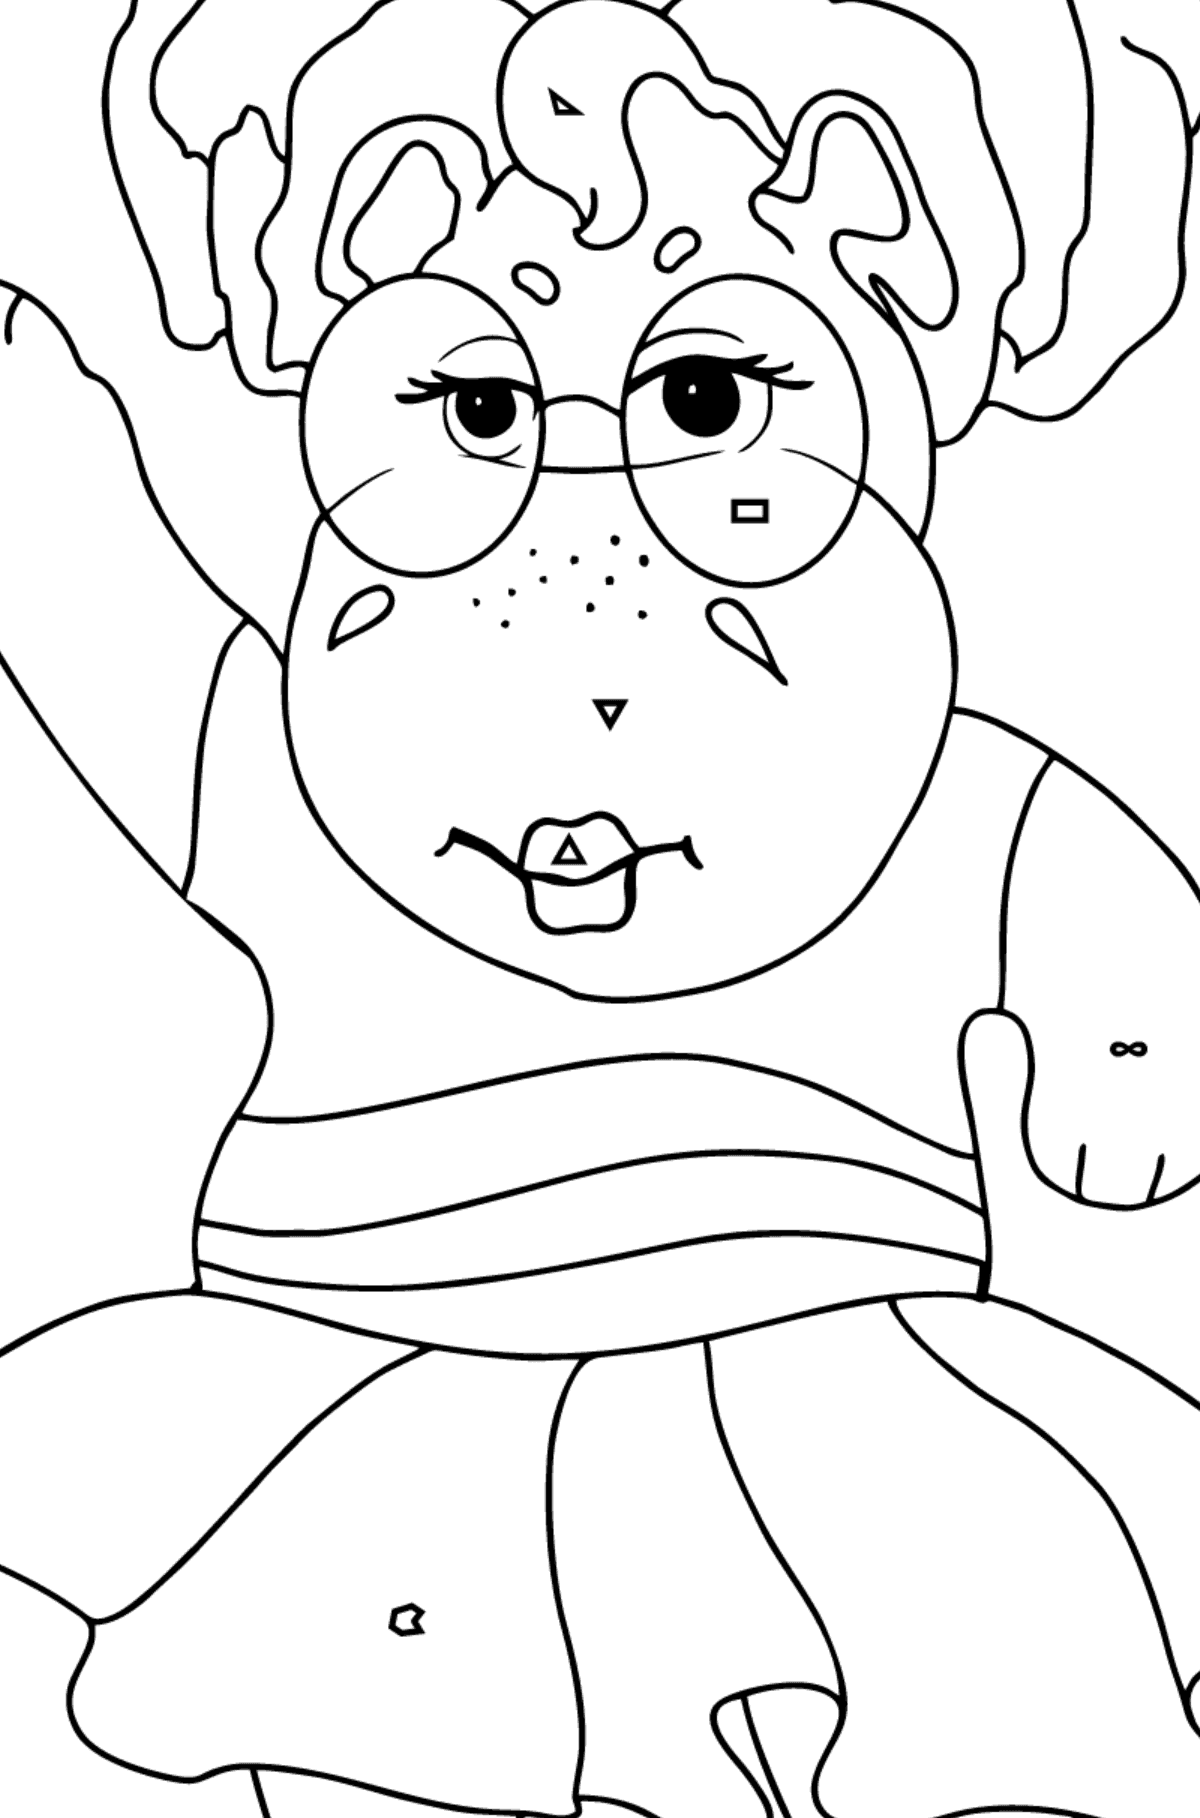 Coloriage Hippopotame dansant (simple) - Coloriage par Symboles pour les Enfants